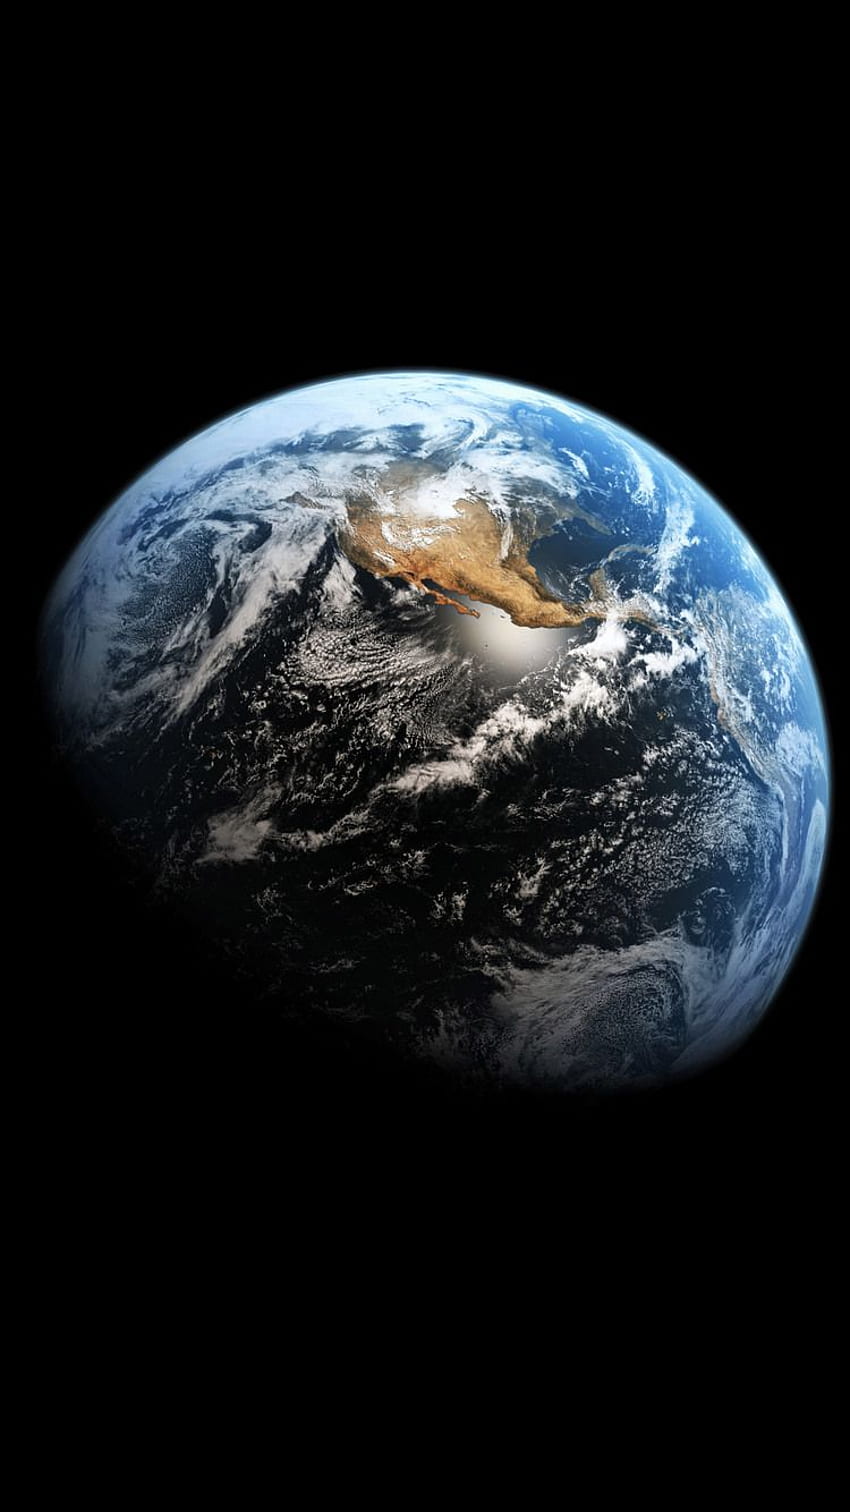 Muốn có một hình nền độc đáo cho iPhone của mình? Hình nền đất trái tim HD sẽ khiến bạn thích thú với hình ảnh trái đất quen thuộc nhưng lại được thiết kế ngộ nghĩnh với hình dạng trái tim. Sự kết hợp này đem lại một màn hình chủ động tuyệt đẹp trên iPhone 6, iPhone 6S, iPhone 7 của bạn. 